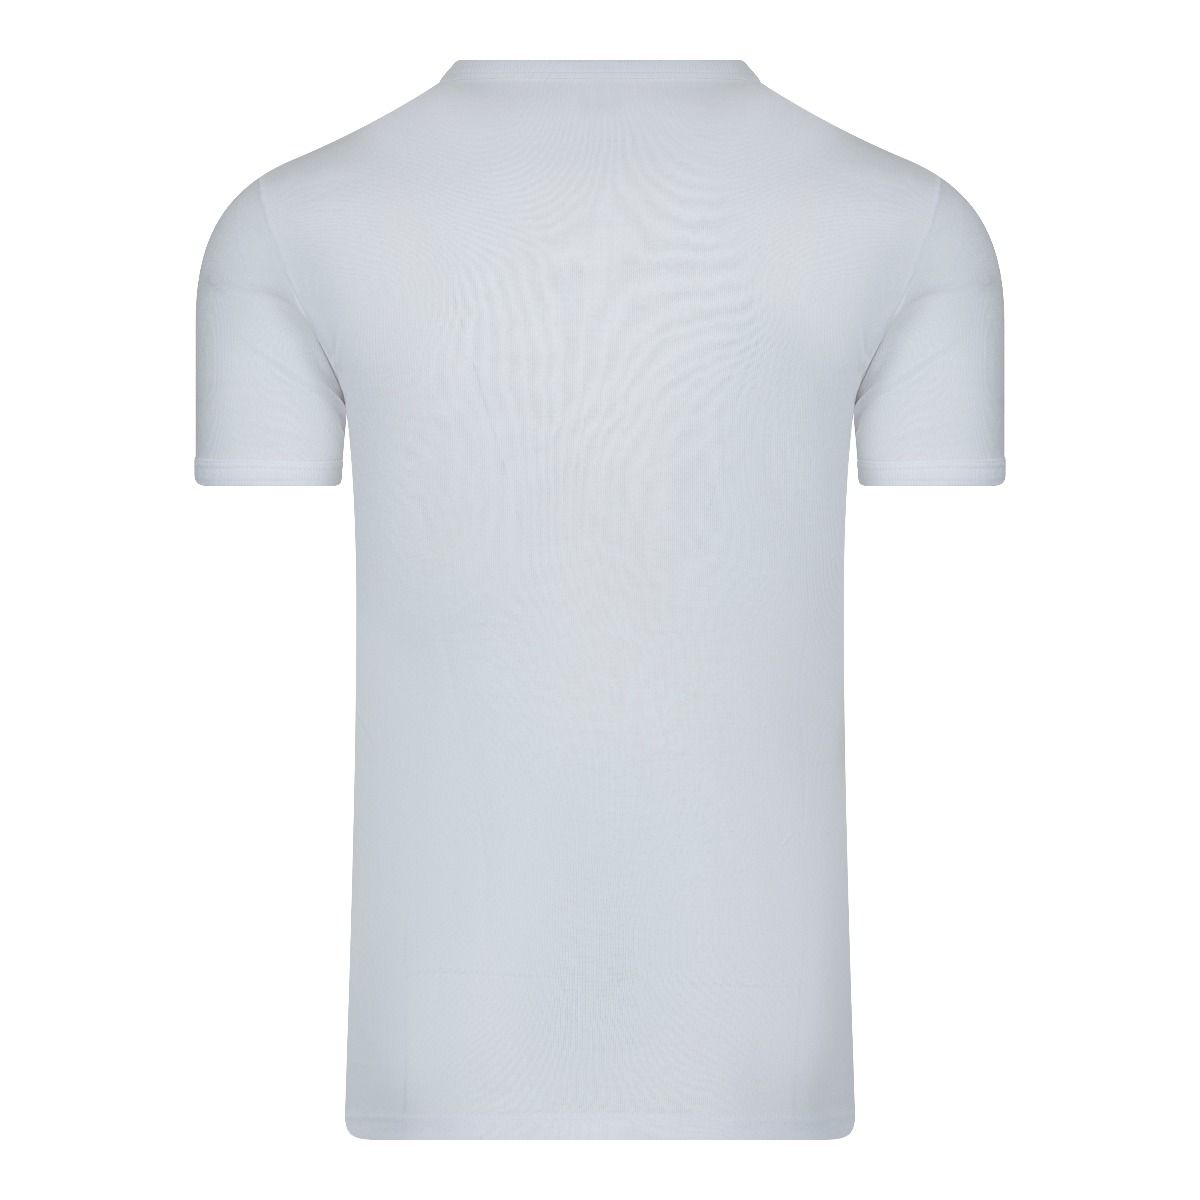 Voorbijganger Grafiek etiket Beeren T-Shirt wit m3000 basis T-Shirt van honderd procent katoen.